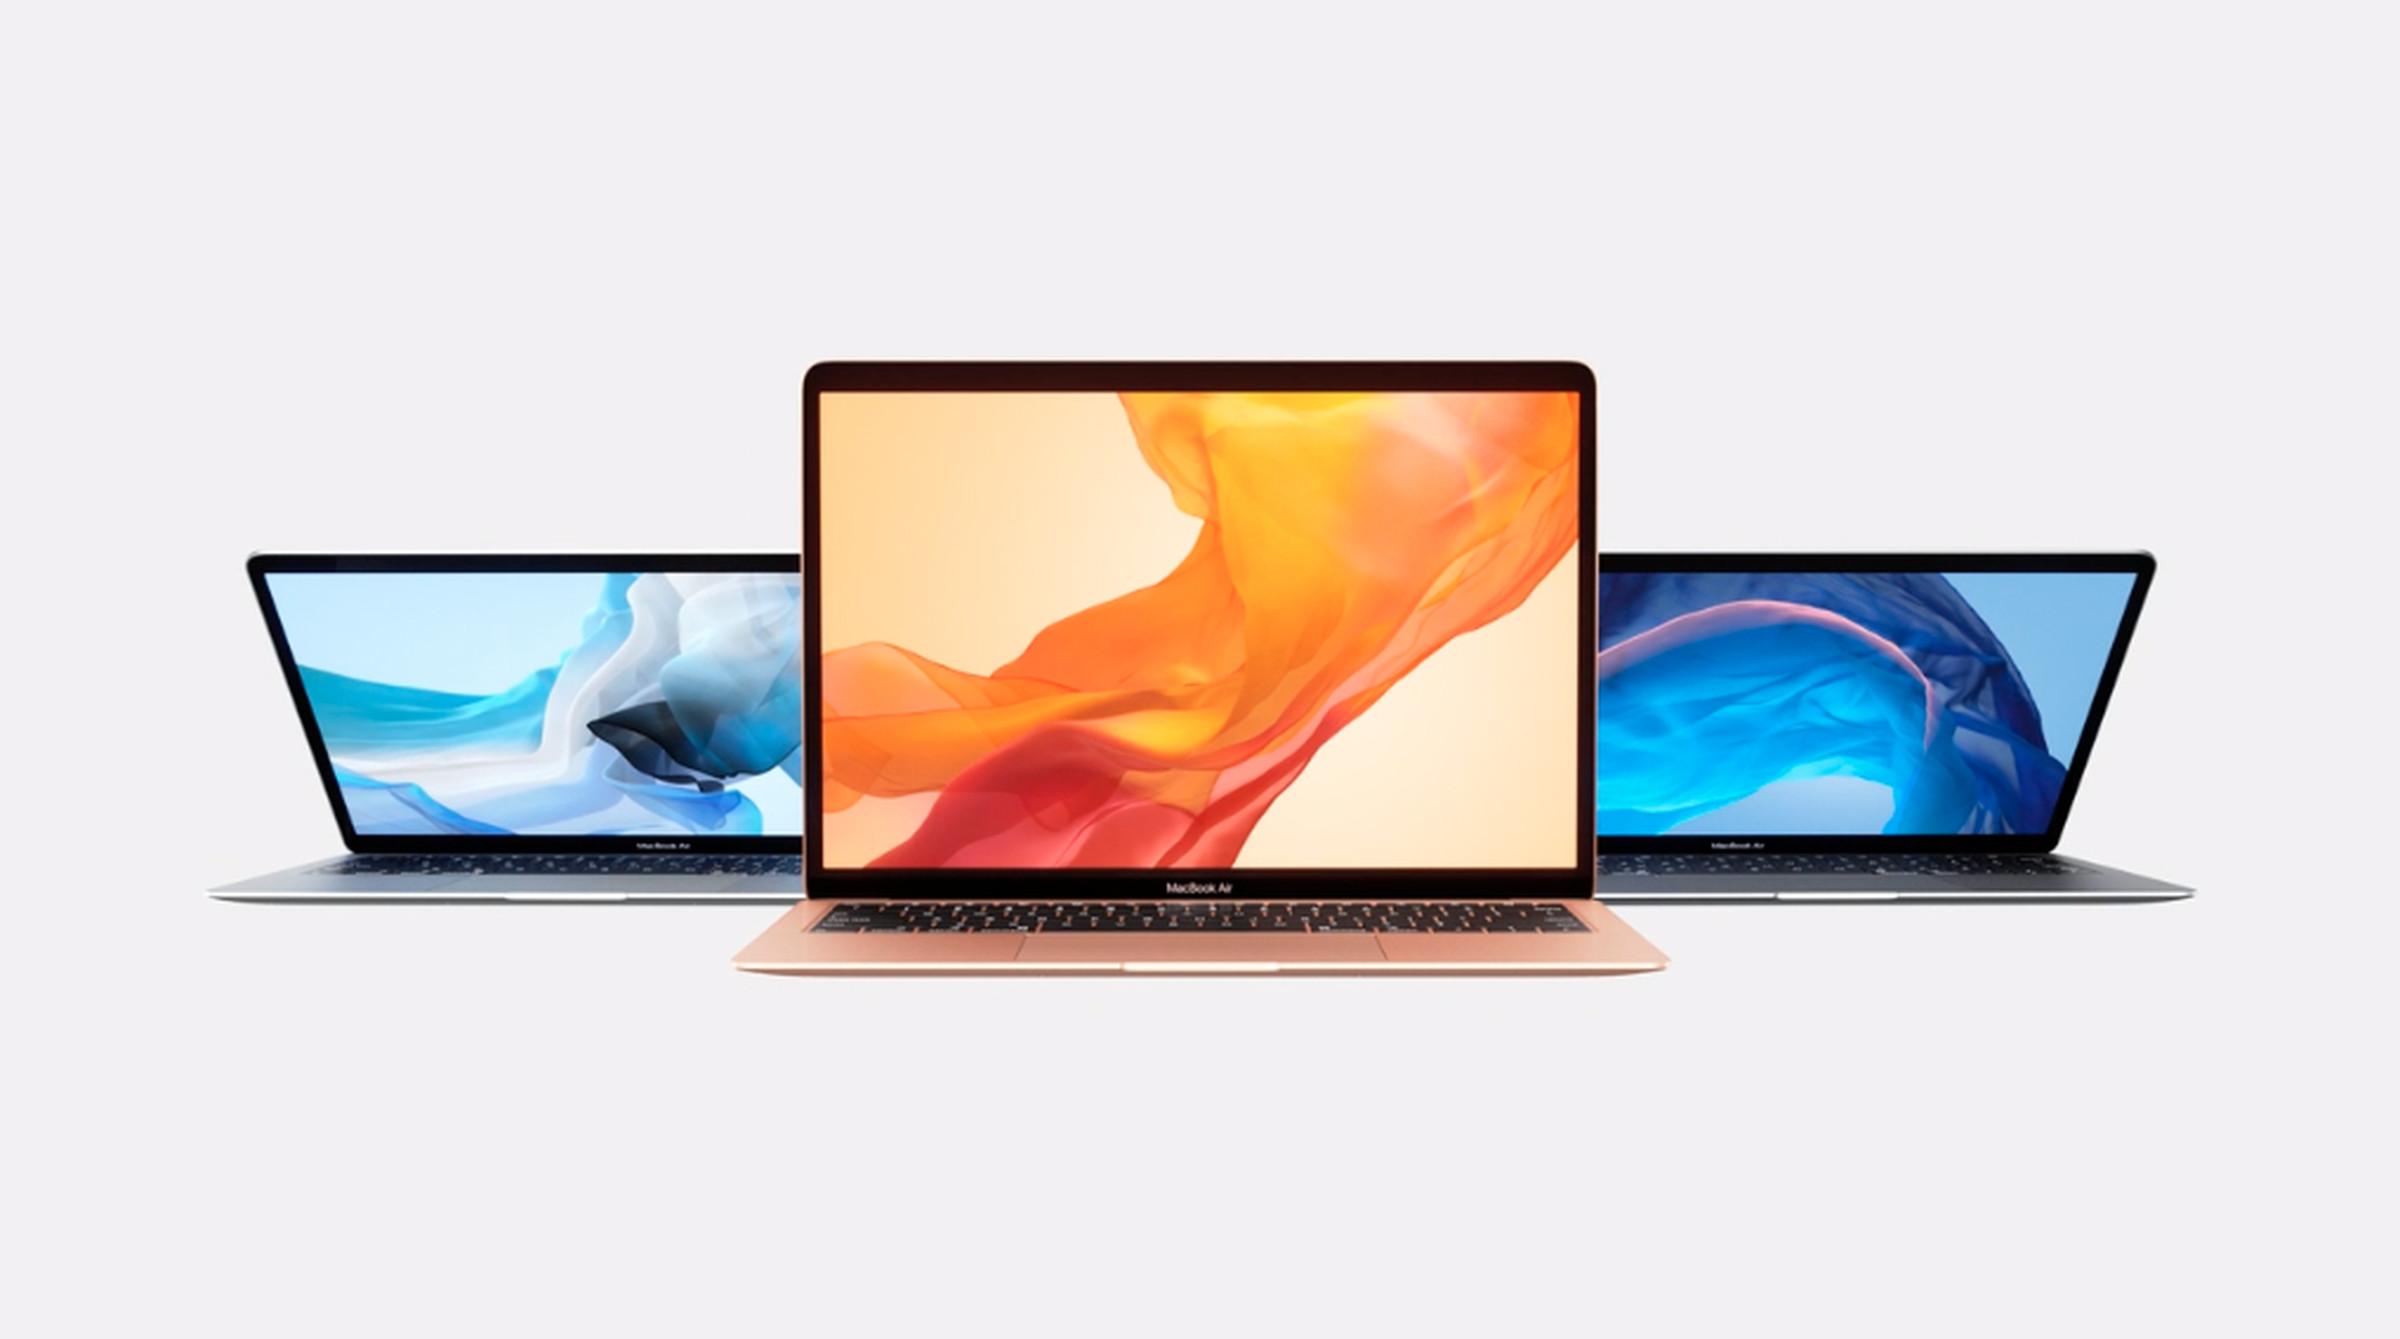 Apple’s 2018 MacBook Air refresh